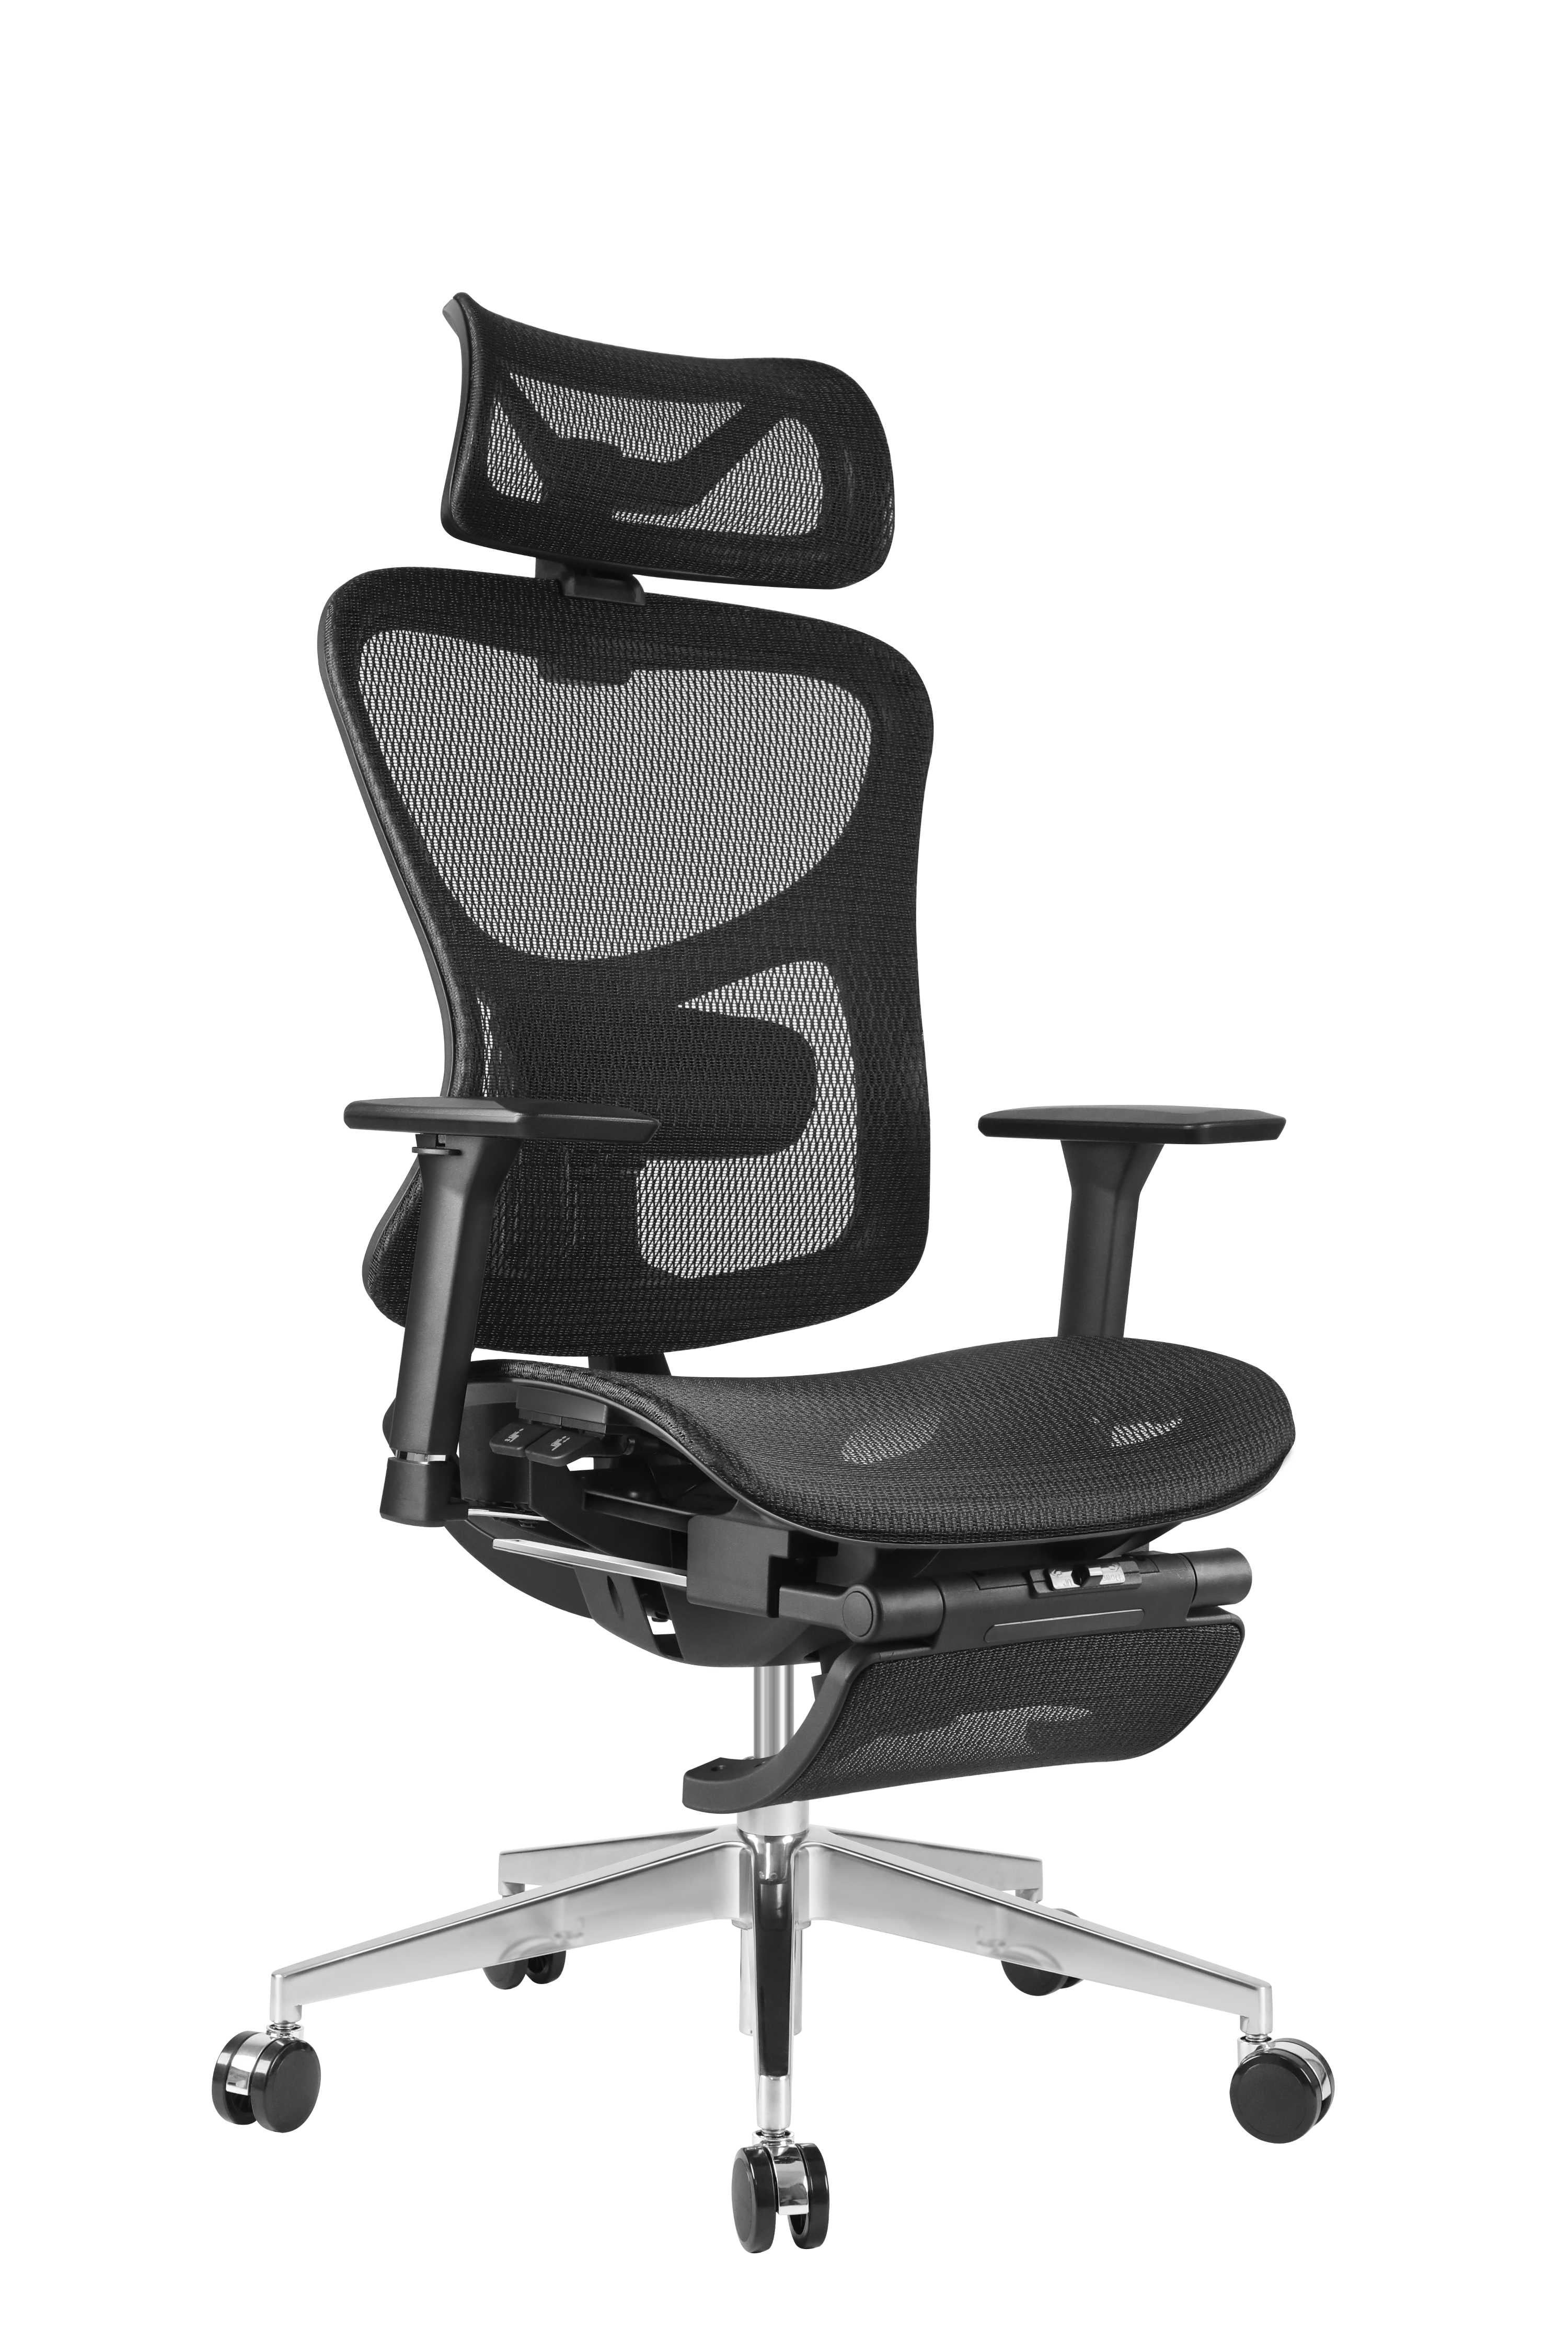 https://ergoupchair.com/cdn/shop/products/ERGOUP-Business-Series-Ergonomic-Chair---HX-A-ERGOUP-Ergonomic-Office-Chair-1670225849.jpg?v=1670225851